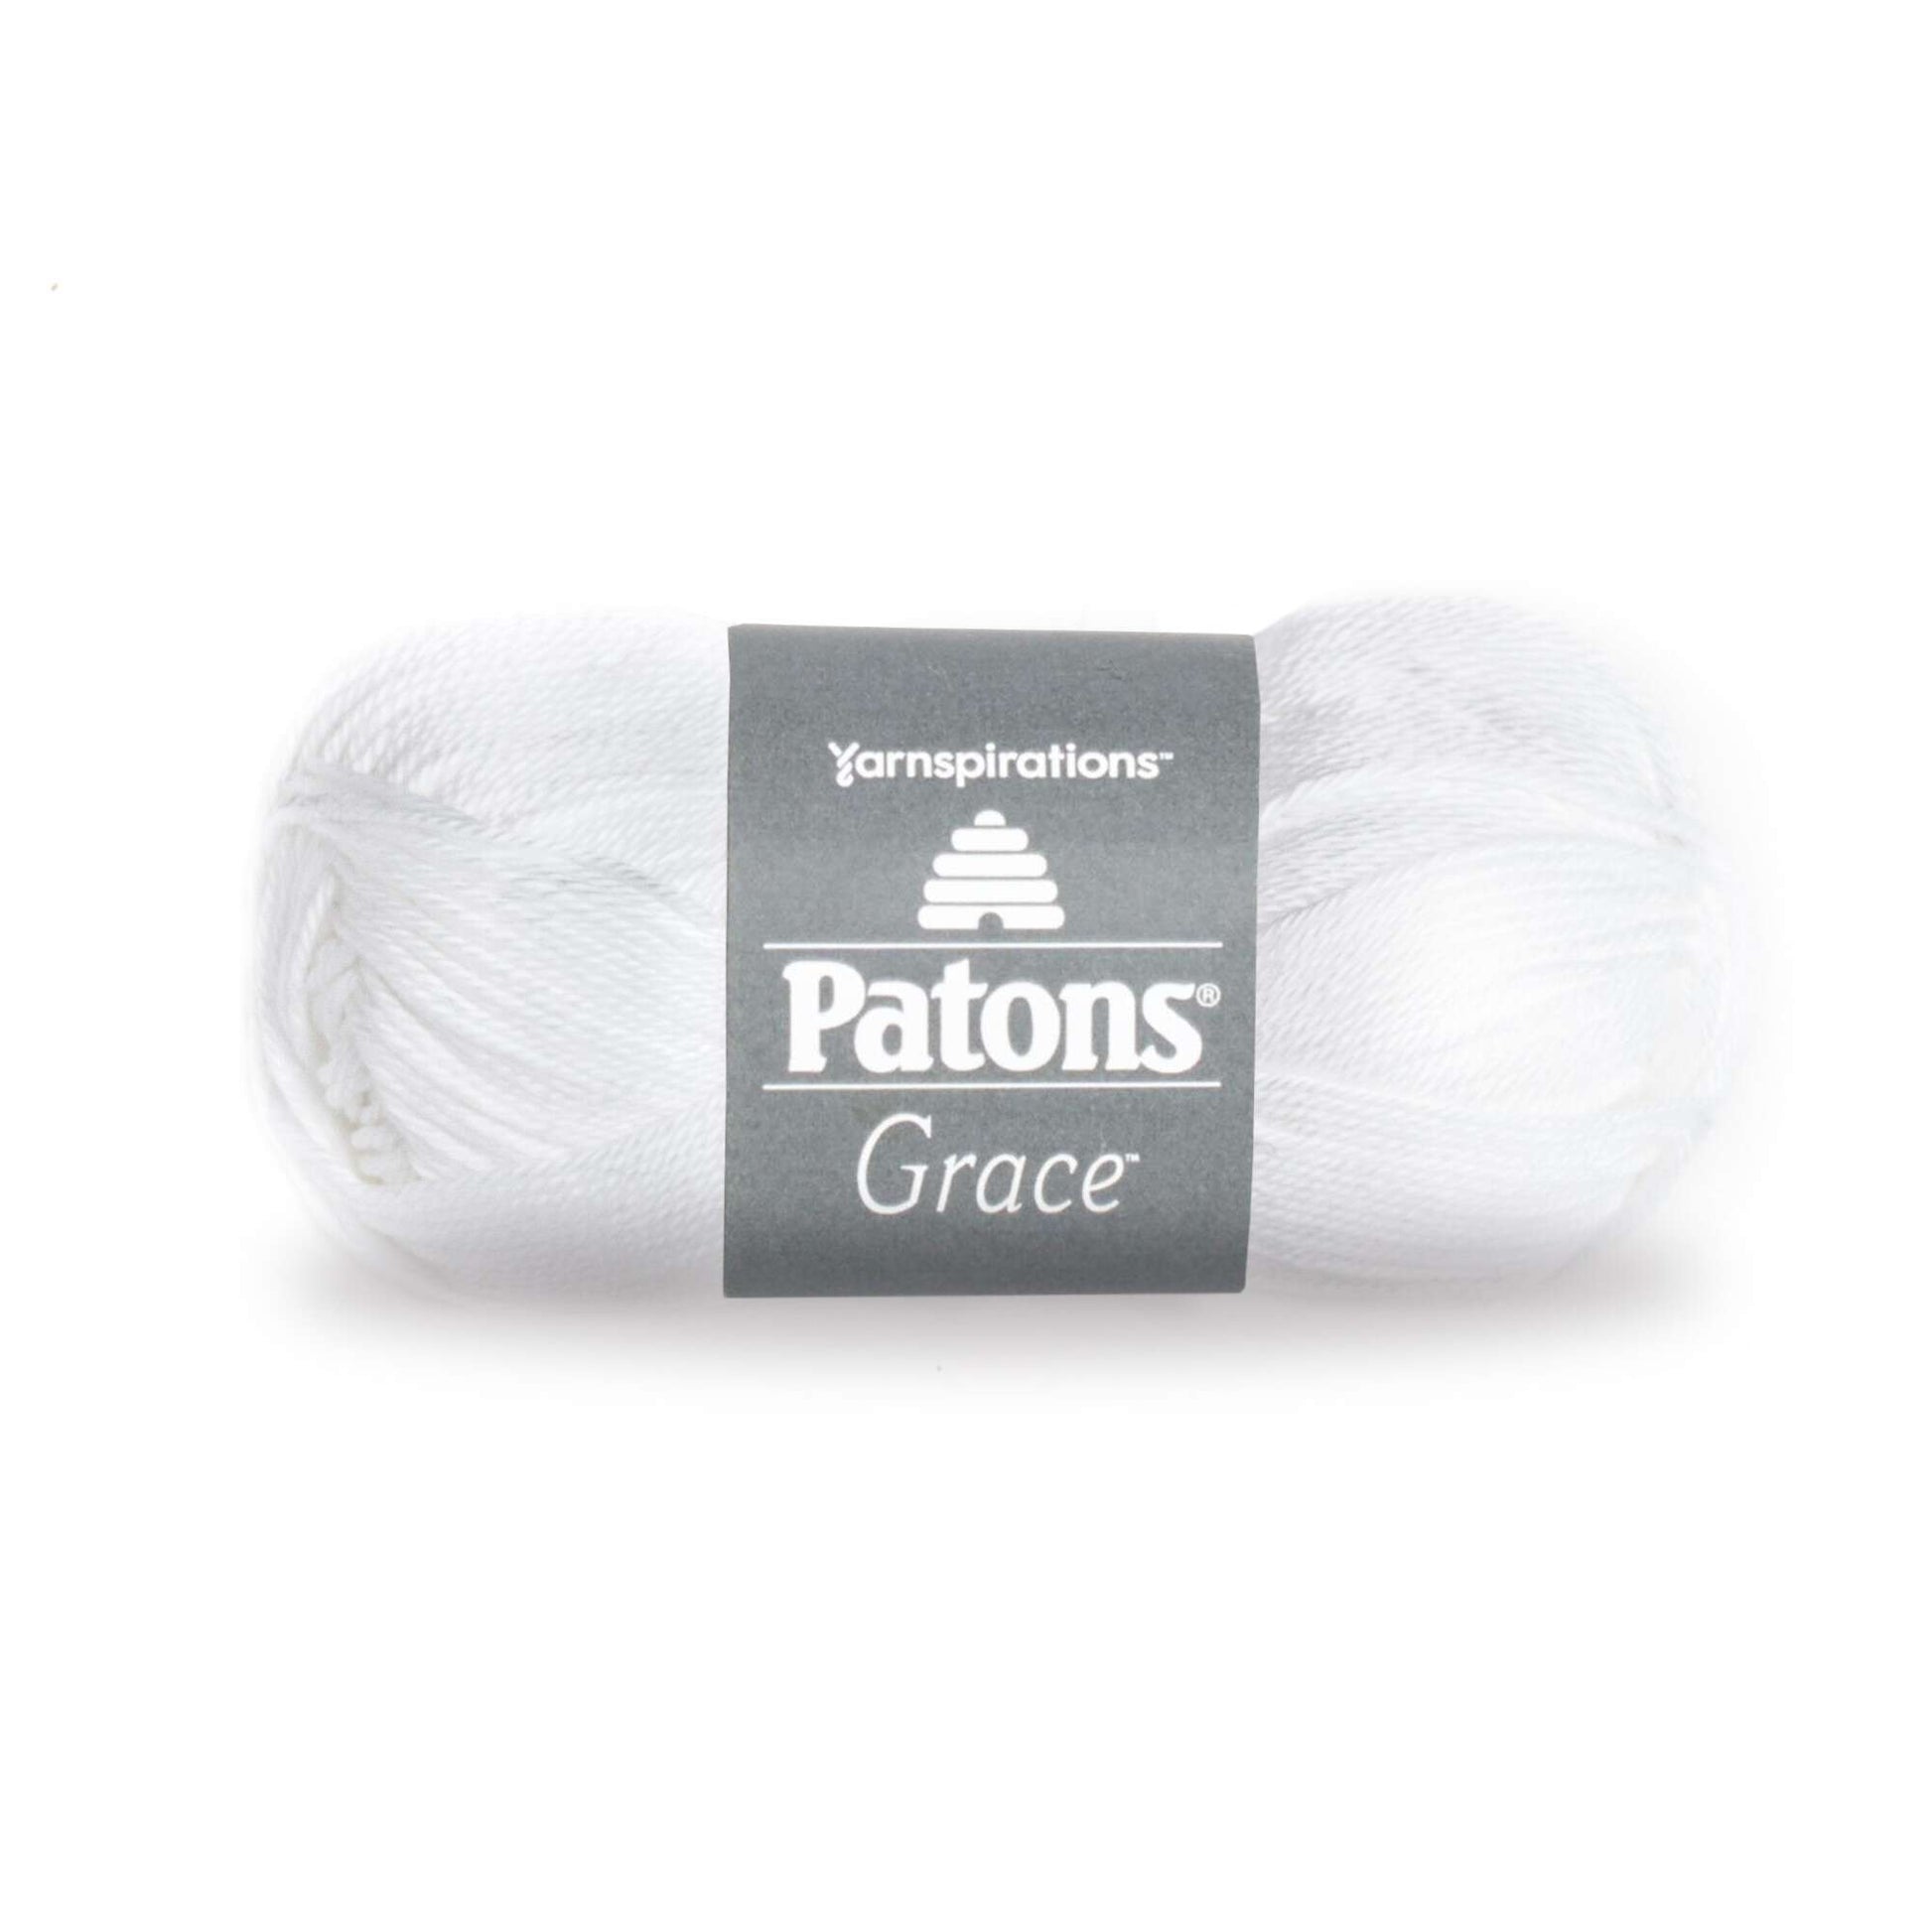 Grayce to Grayce- Selling Handmade Artisan Goods and more – grayce-to-grayce